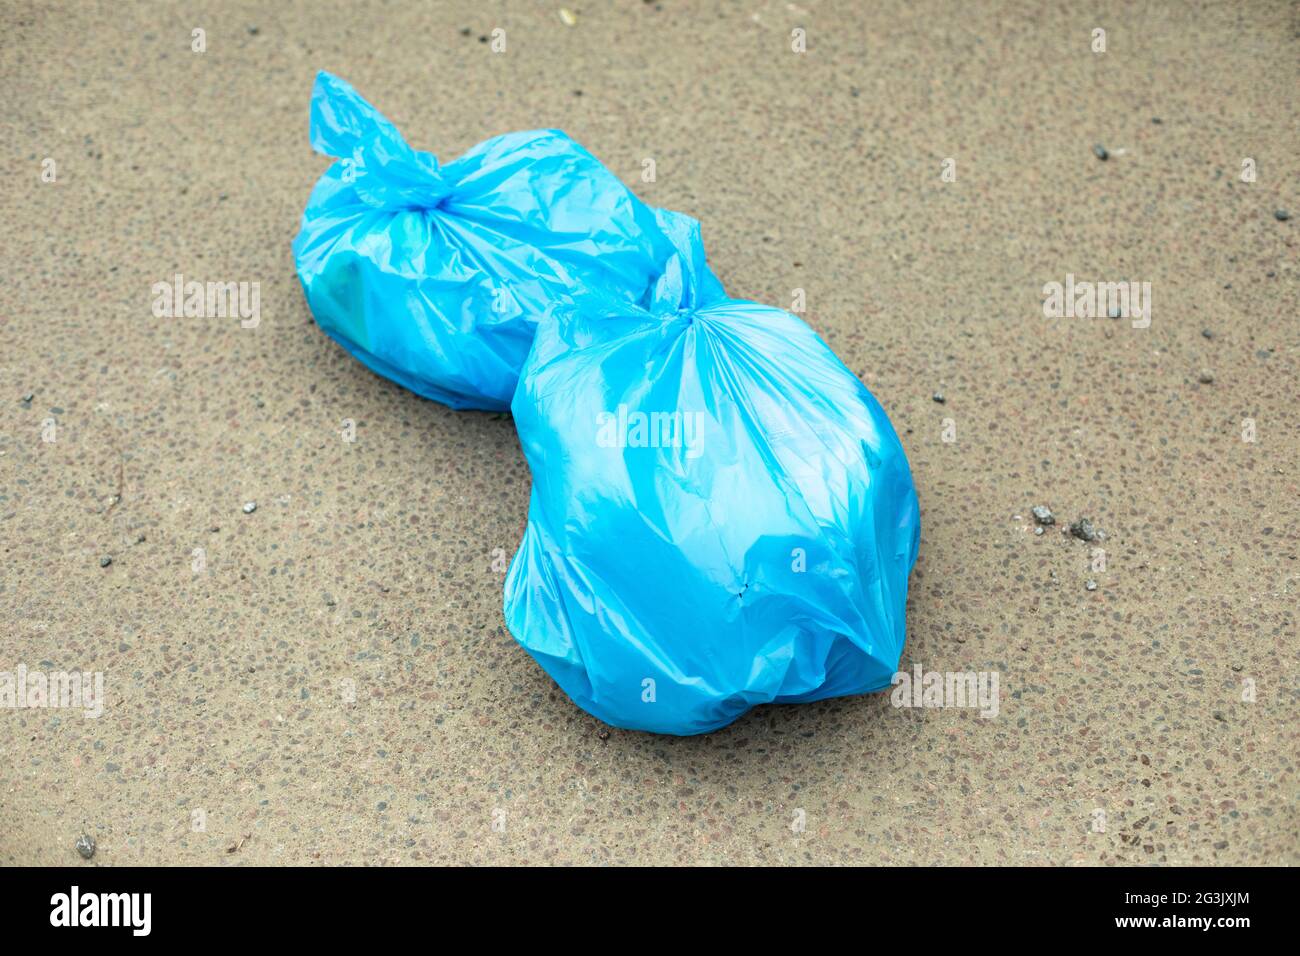 Sac poubelle sur la route. Un sac poubelle bleu repose sur l'asphalte. Les déchets ménagers sont jetés au mauvais endroit. Banque D'Images